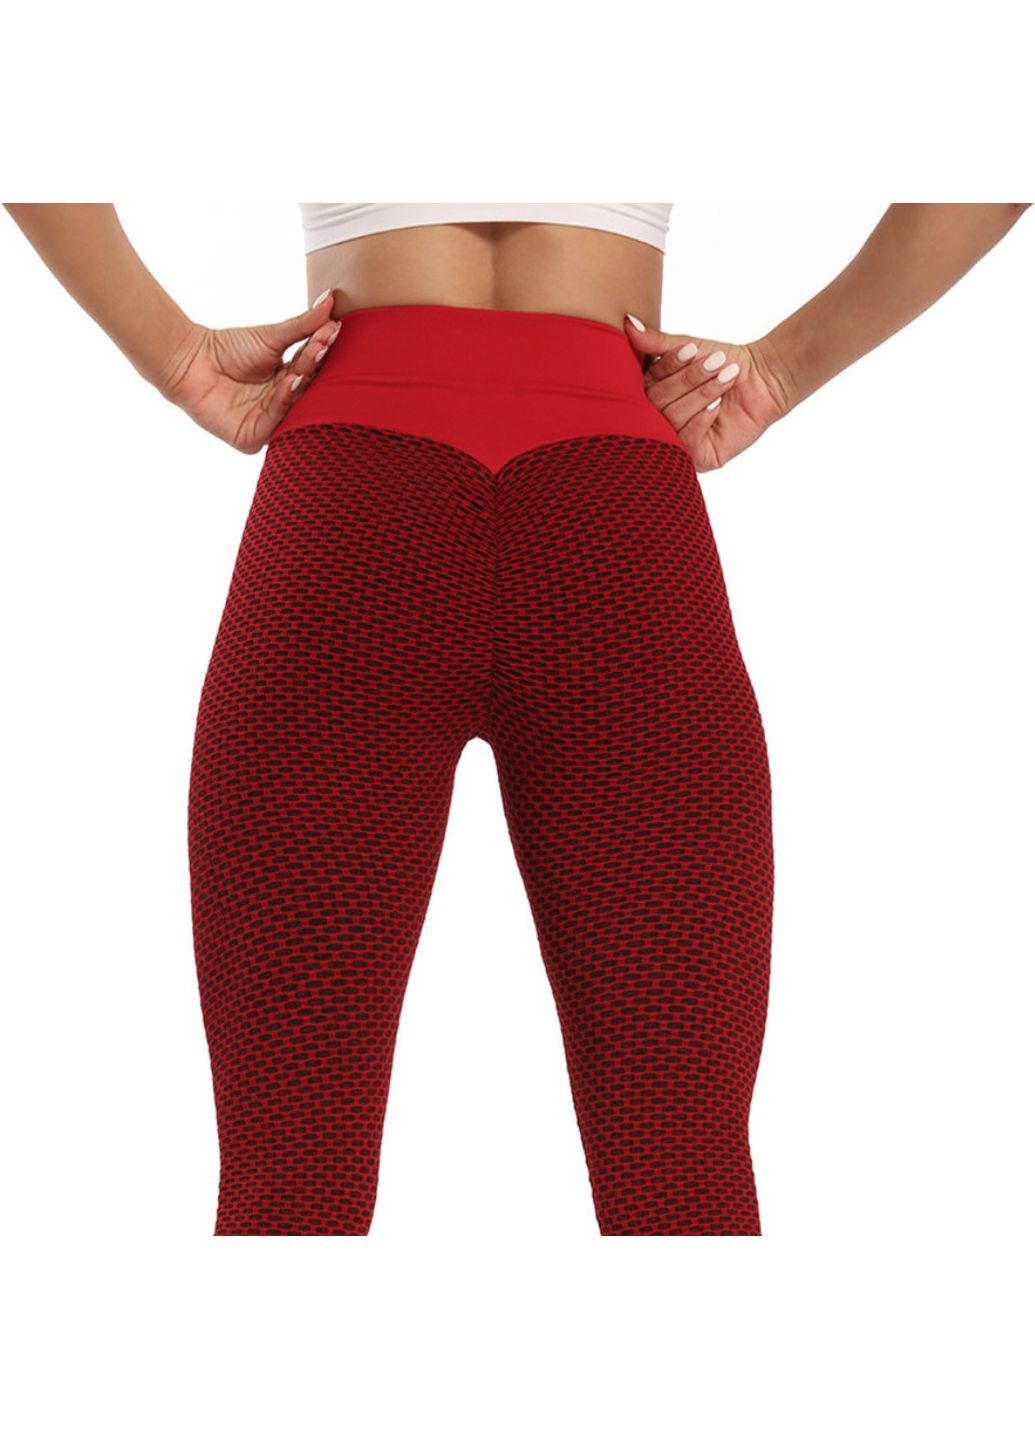 Комбинированные демисезонные леггинсы женские спортивные s 6088 красные Fashion